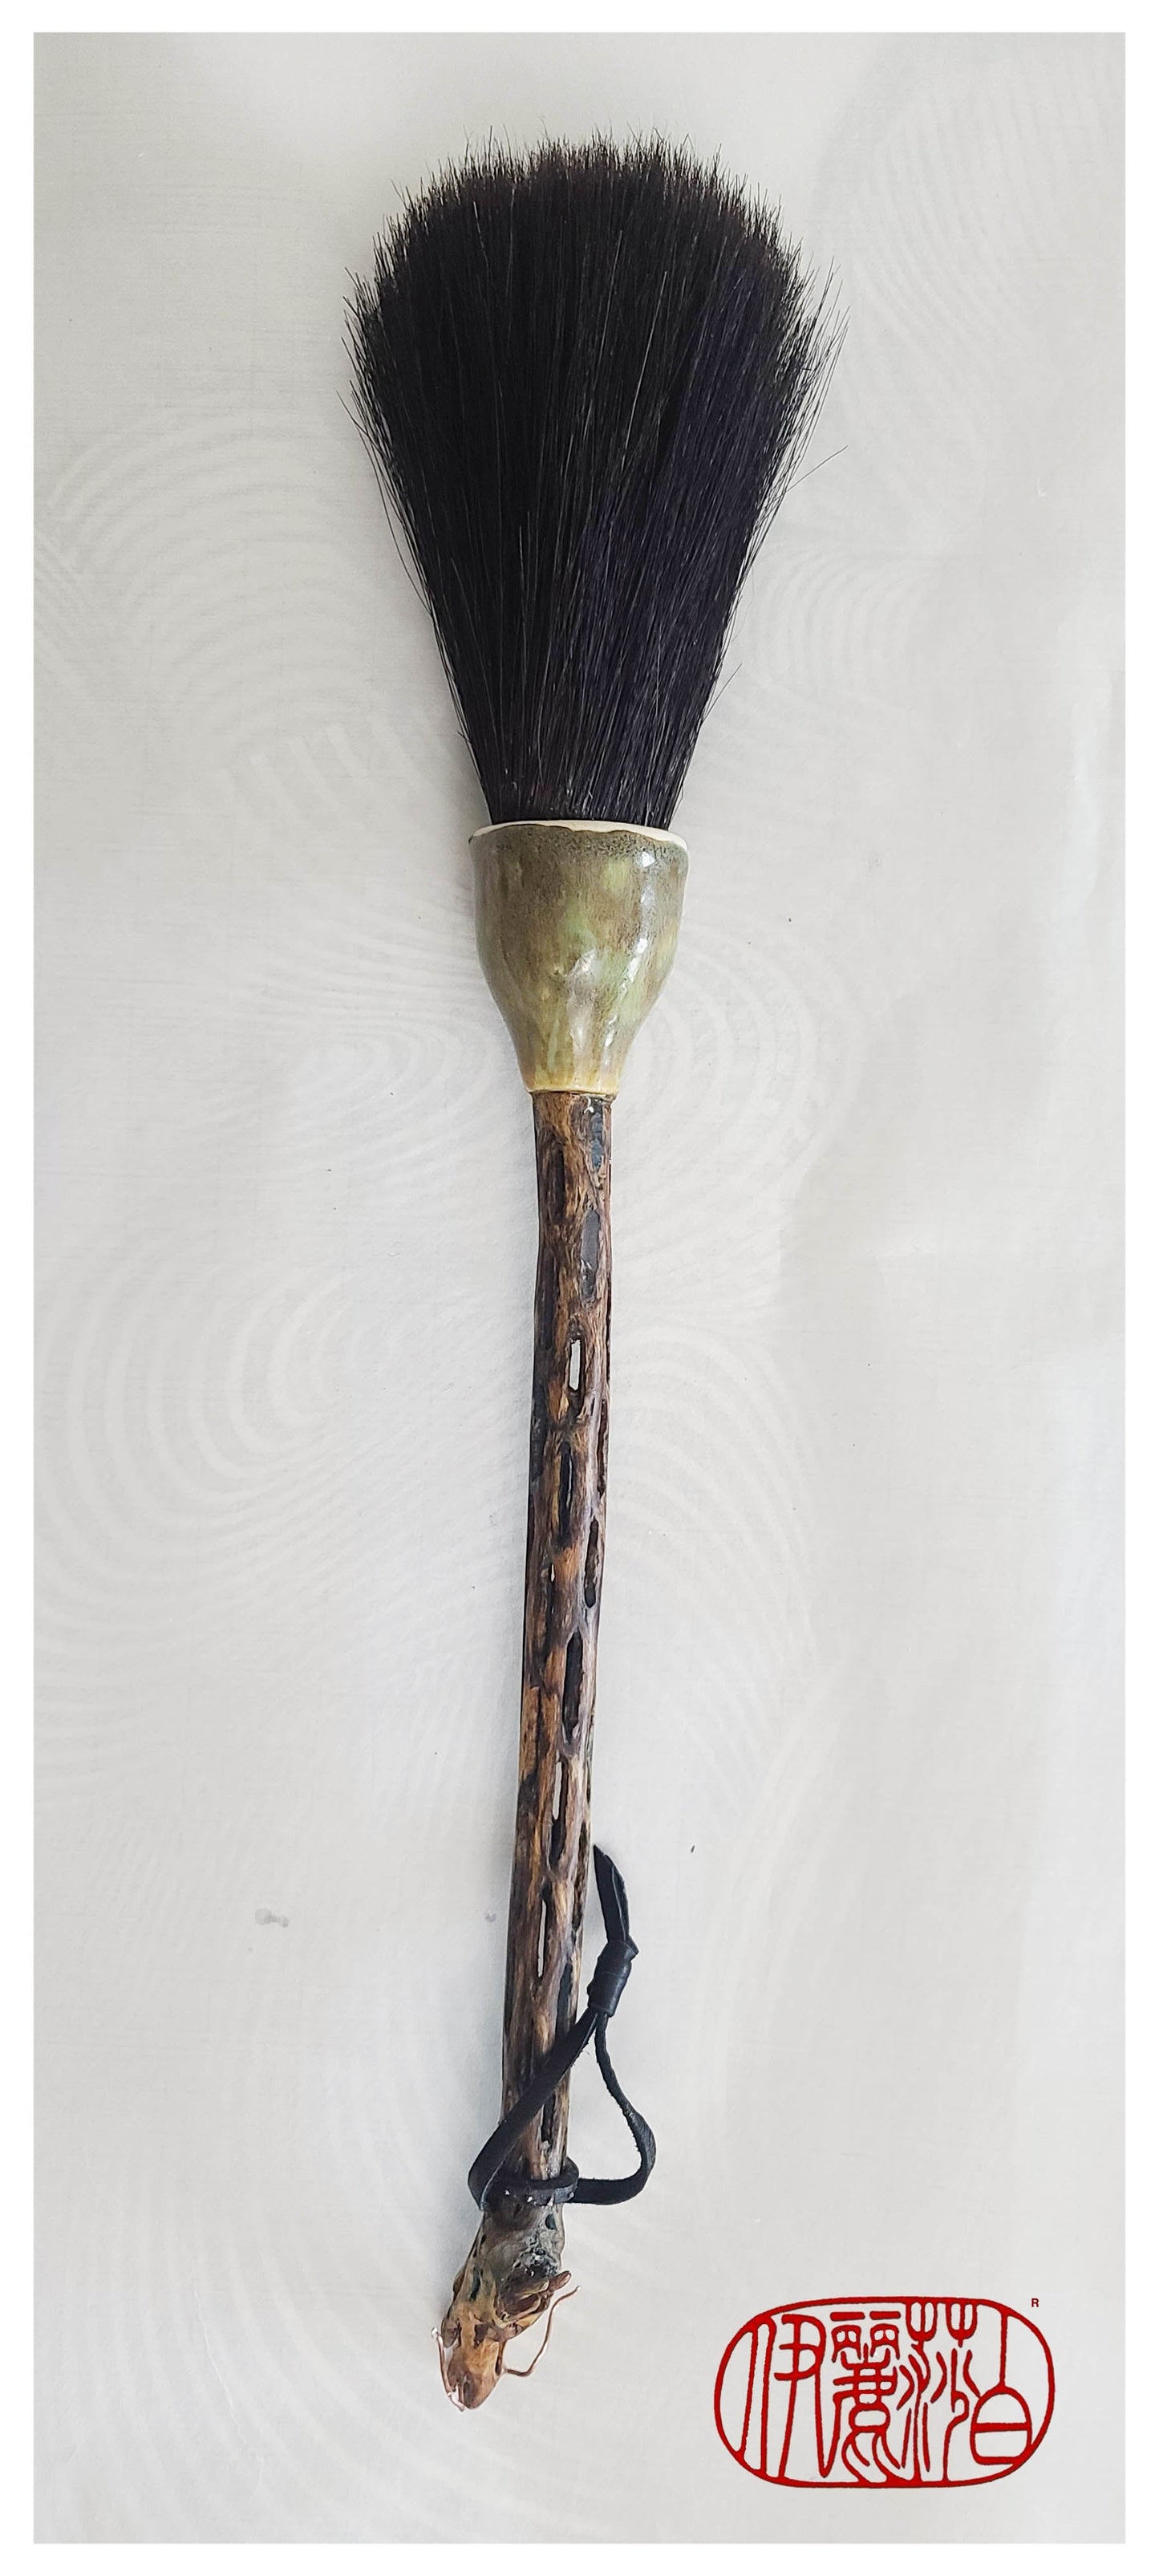 Dragon Sumi-e Paintbrush with Ceramic Ferrule #220 Art Supplies Elizabeth Schowachert Art